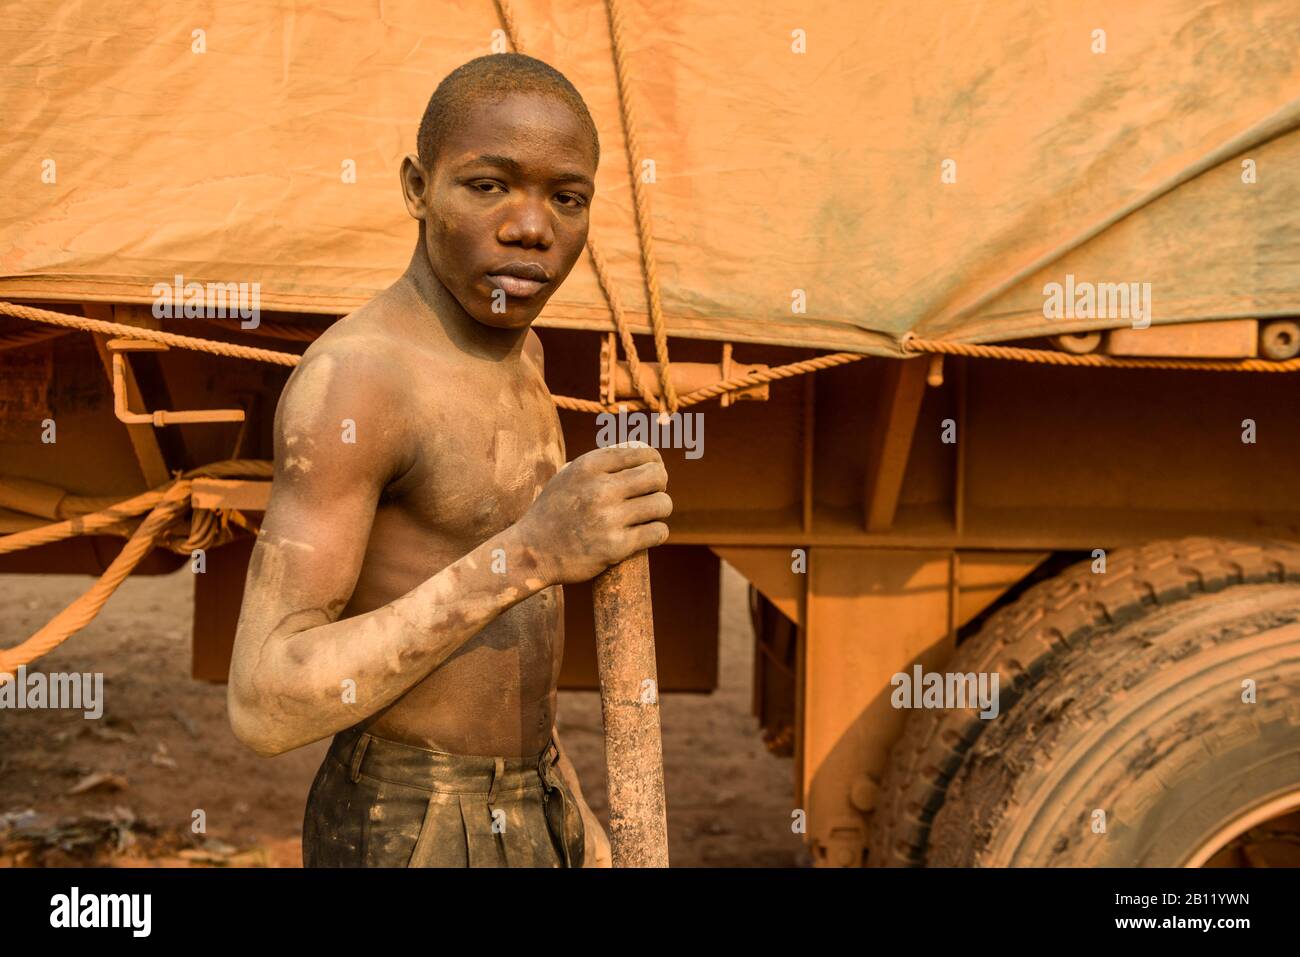 L'uomo congolese ripara gli pneumatici, la metà meridionale della Repubblica Democratica del Congo, l'Africa Foto Stock